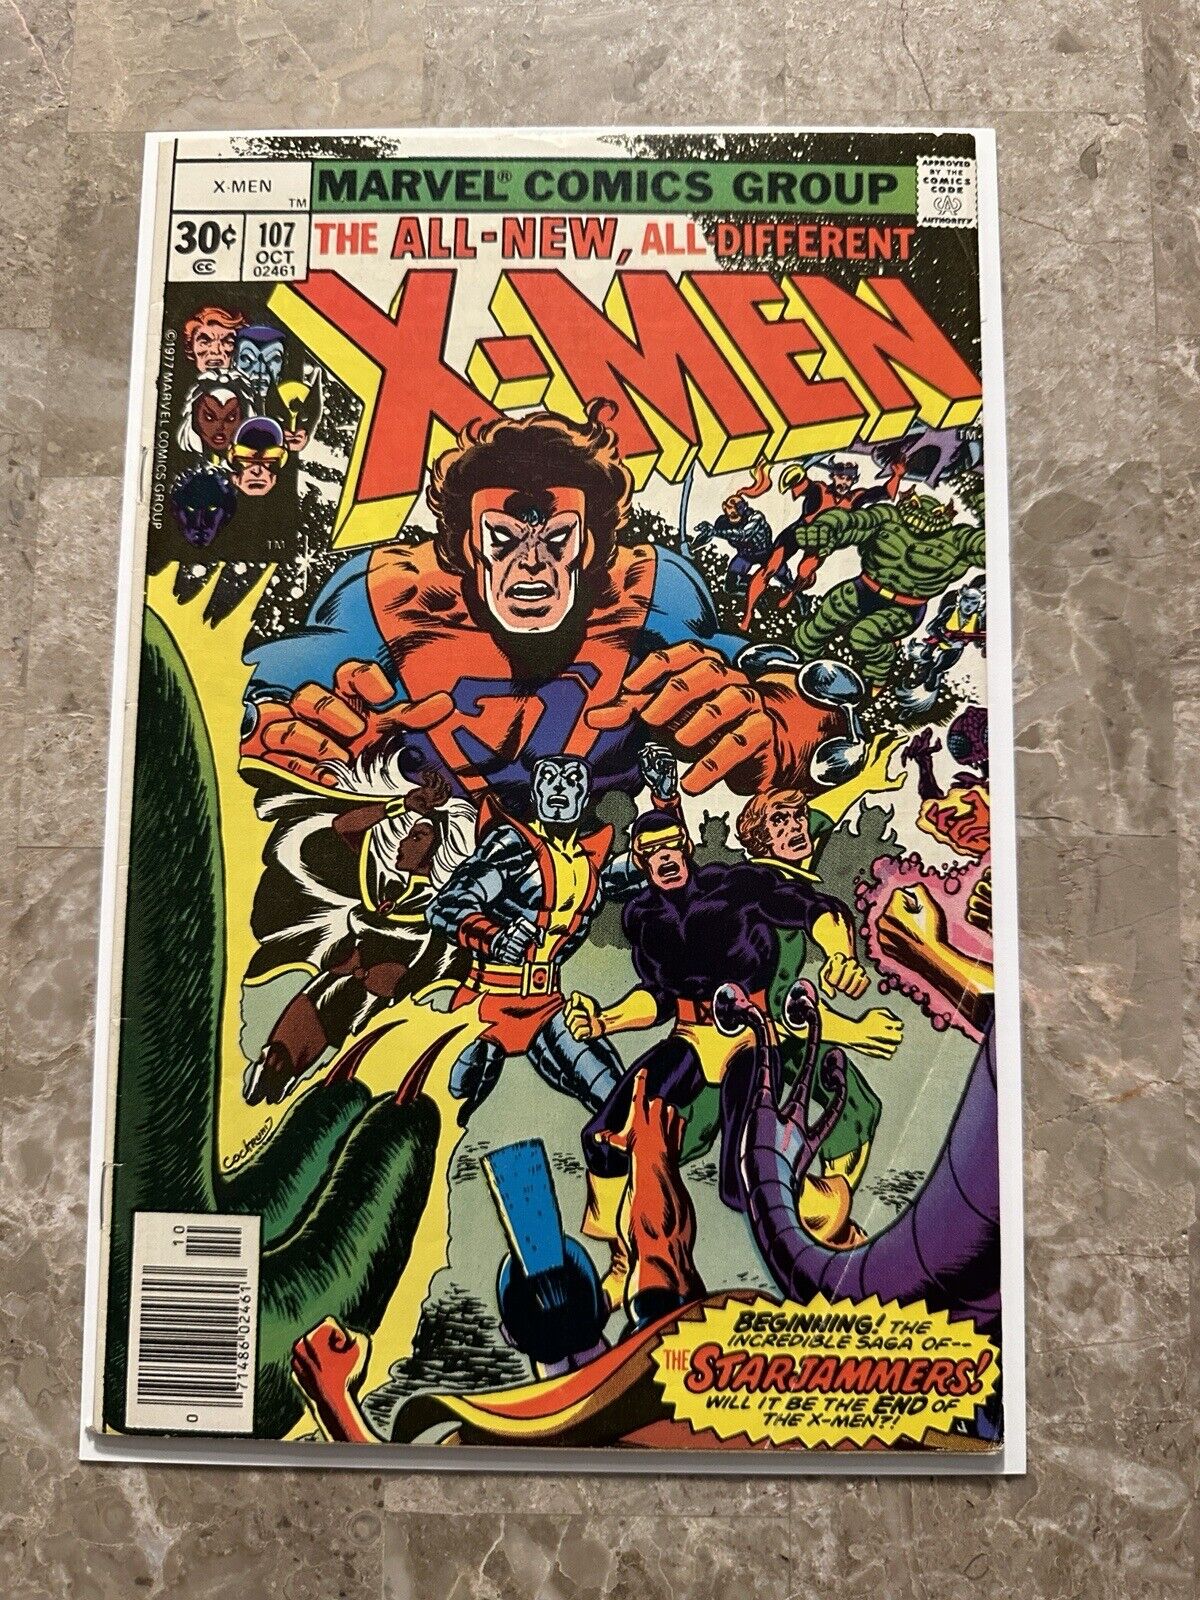 X-Men #107 FN (1977 Marvel Comics) - Solid Copy